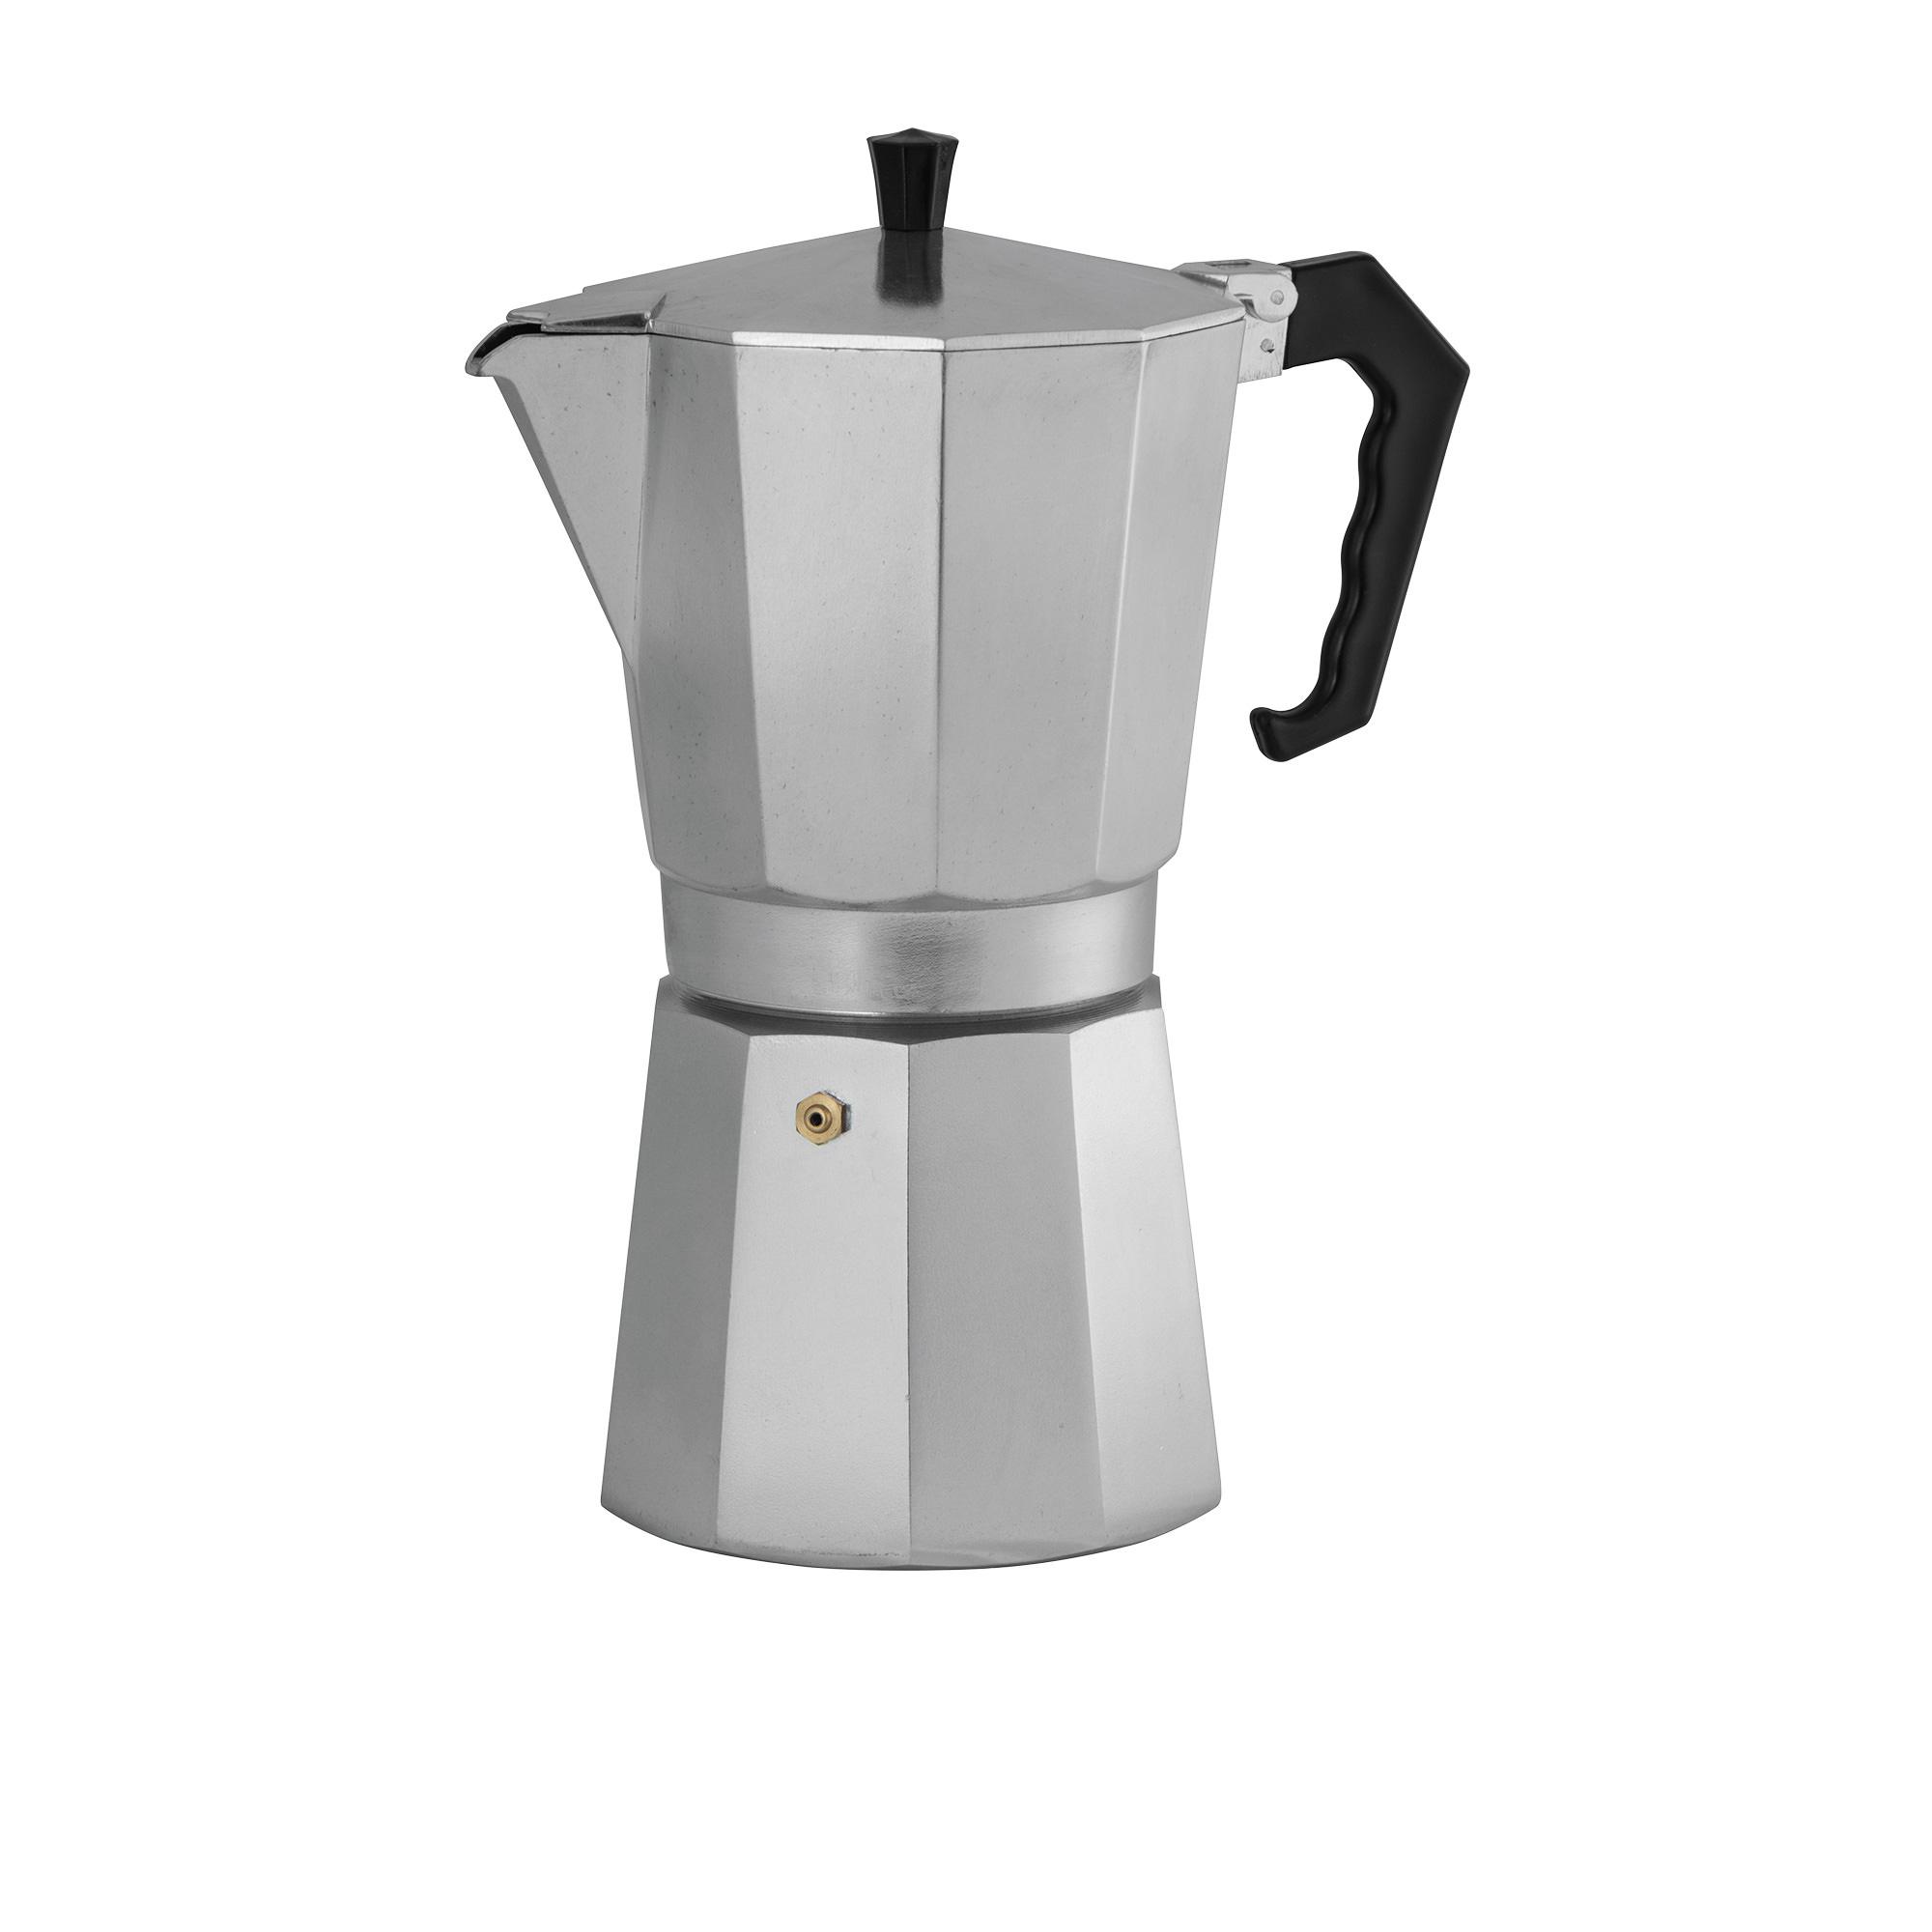 Avanti ClassicPro Espresso Coffee Maker 12 Cup Image 1